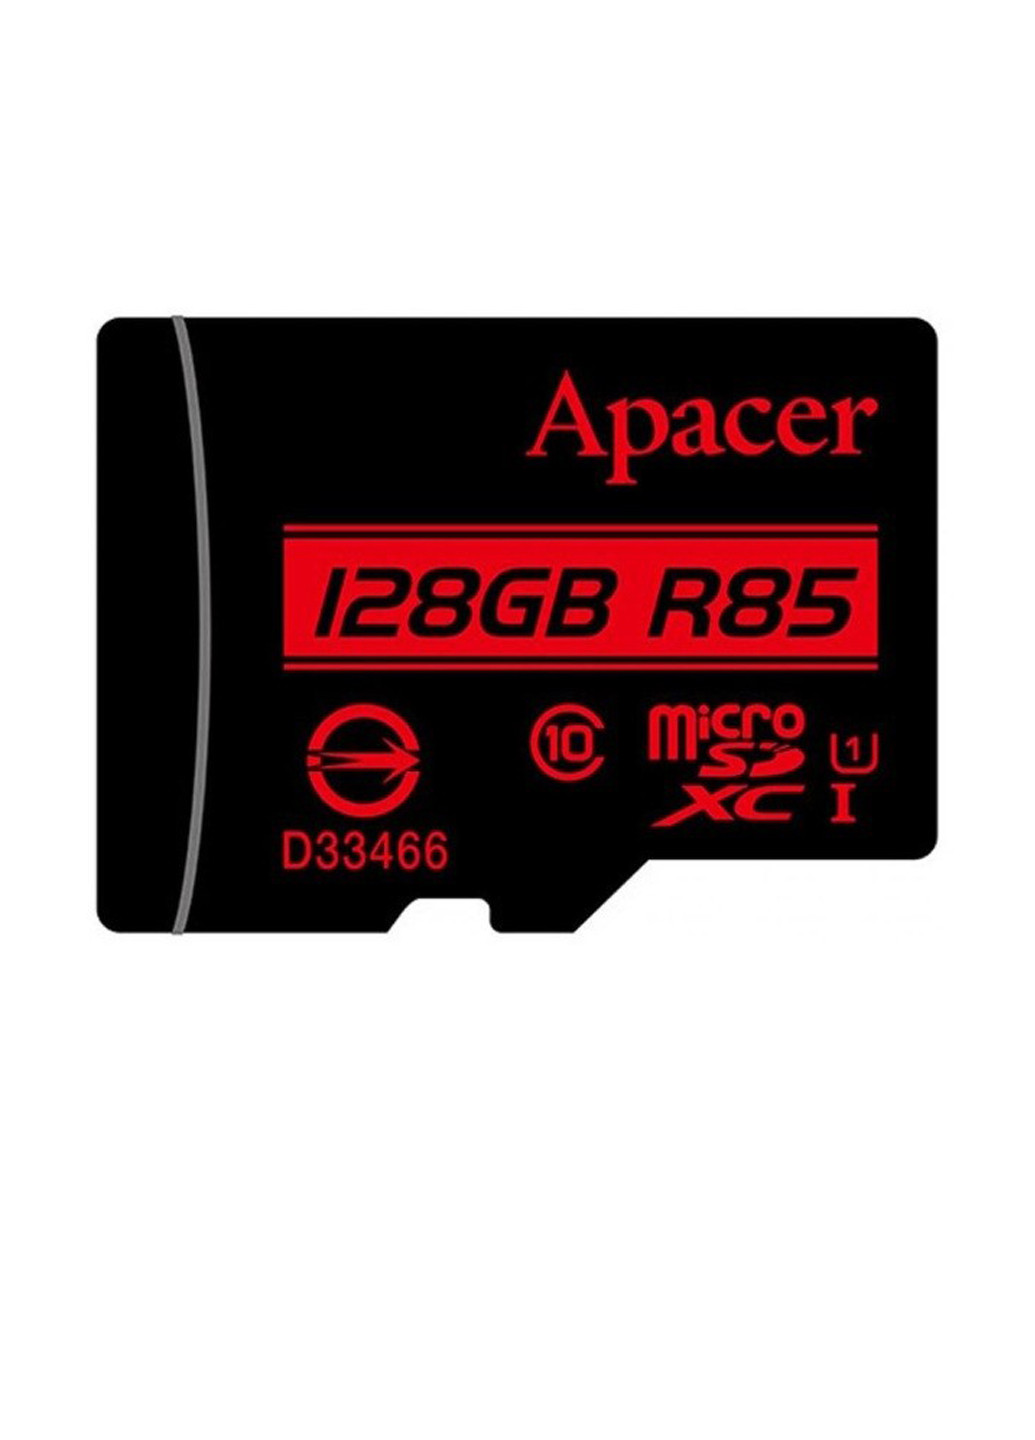 Карта памяти microSDXC 128GB C10 UHS-I U1 (R85MB/s) + SD-adapter (AP128GMCSX10U5-R) Apacer карта памяти apacer microsdxc 128gb c10 uhs-i u1 (r85mb/s) + sd-adapter (ap128gmcsx10u5-r) (135316885)